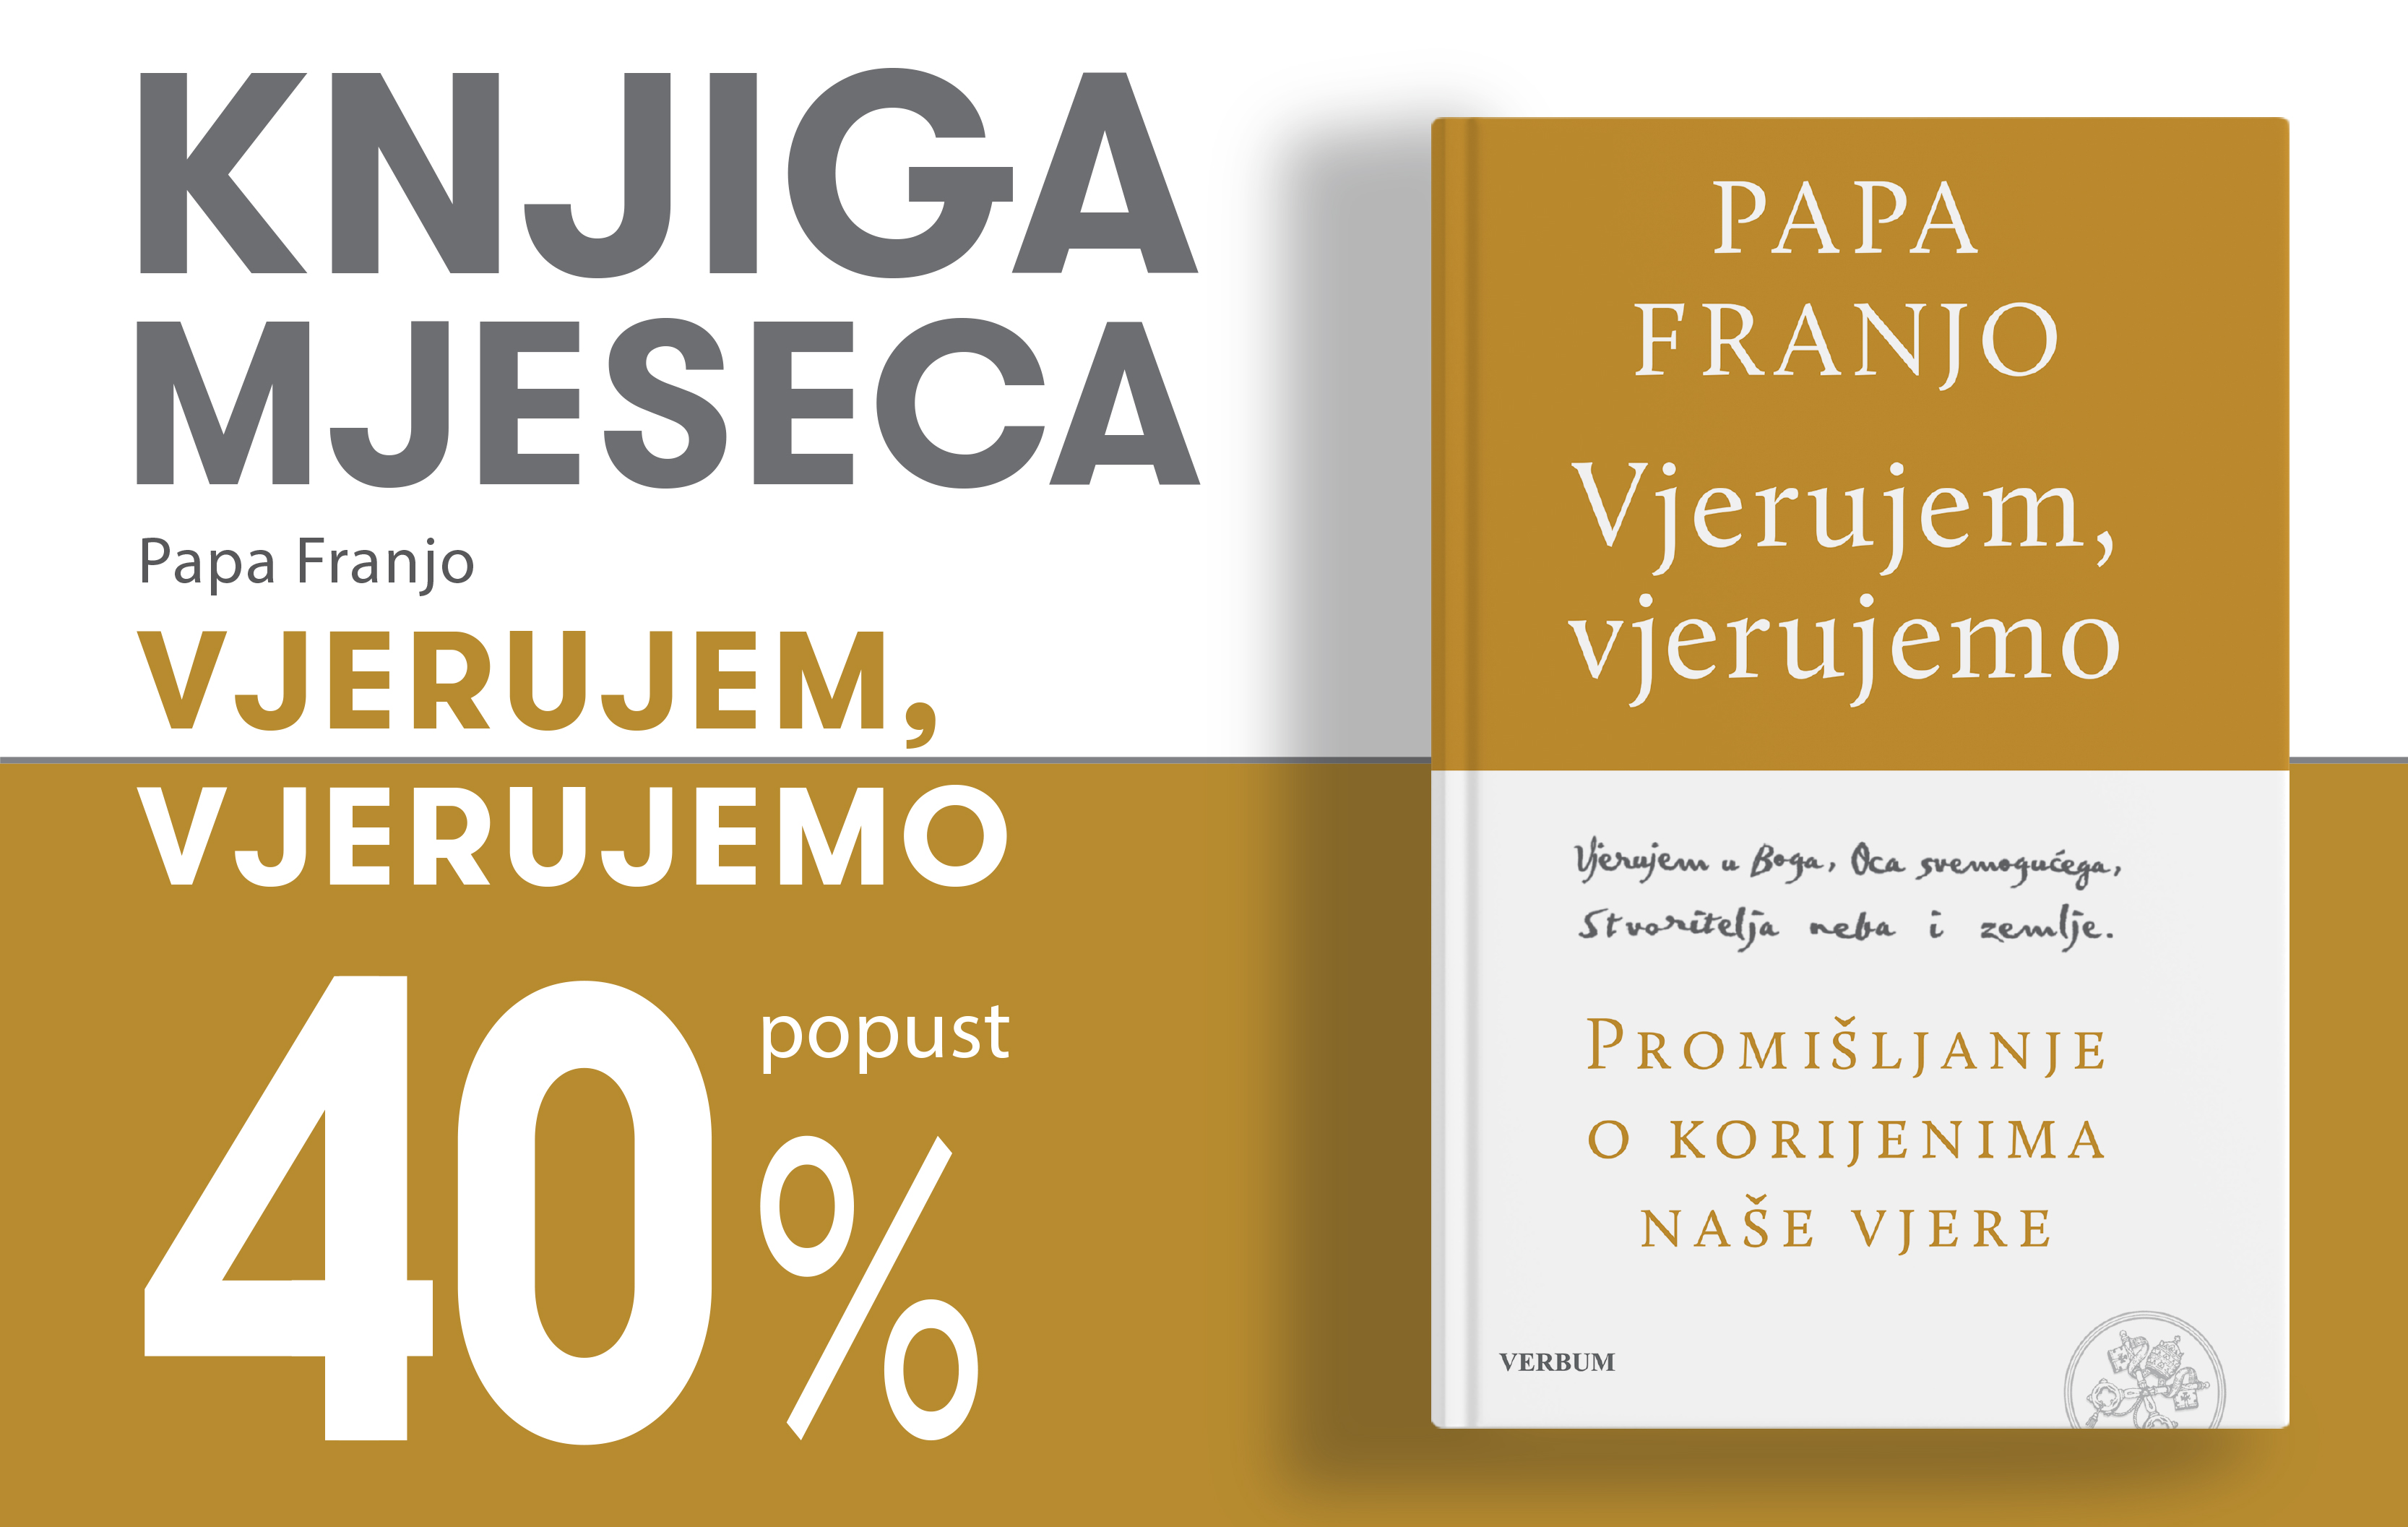 Knjiga "Vjerujem, vjerujemo" pape Franje uz 40% popusta za članove kluba Verbum